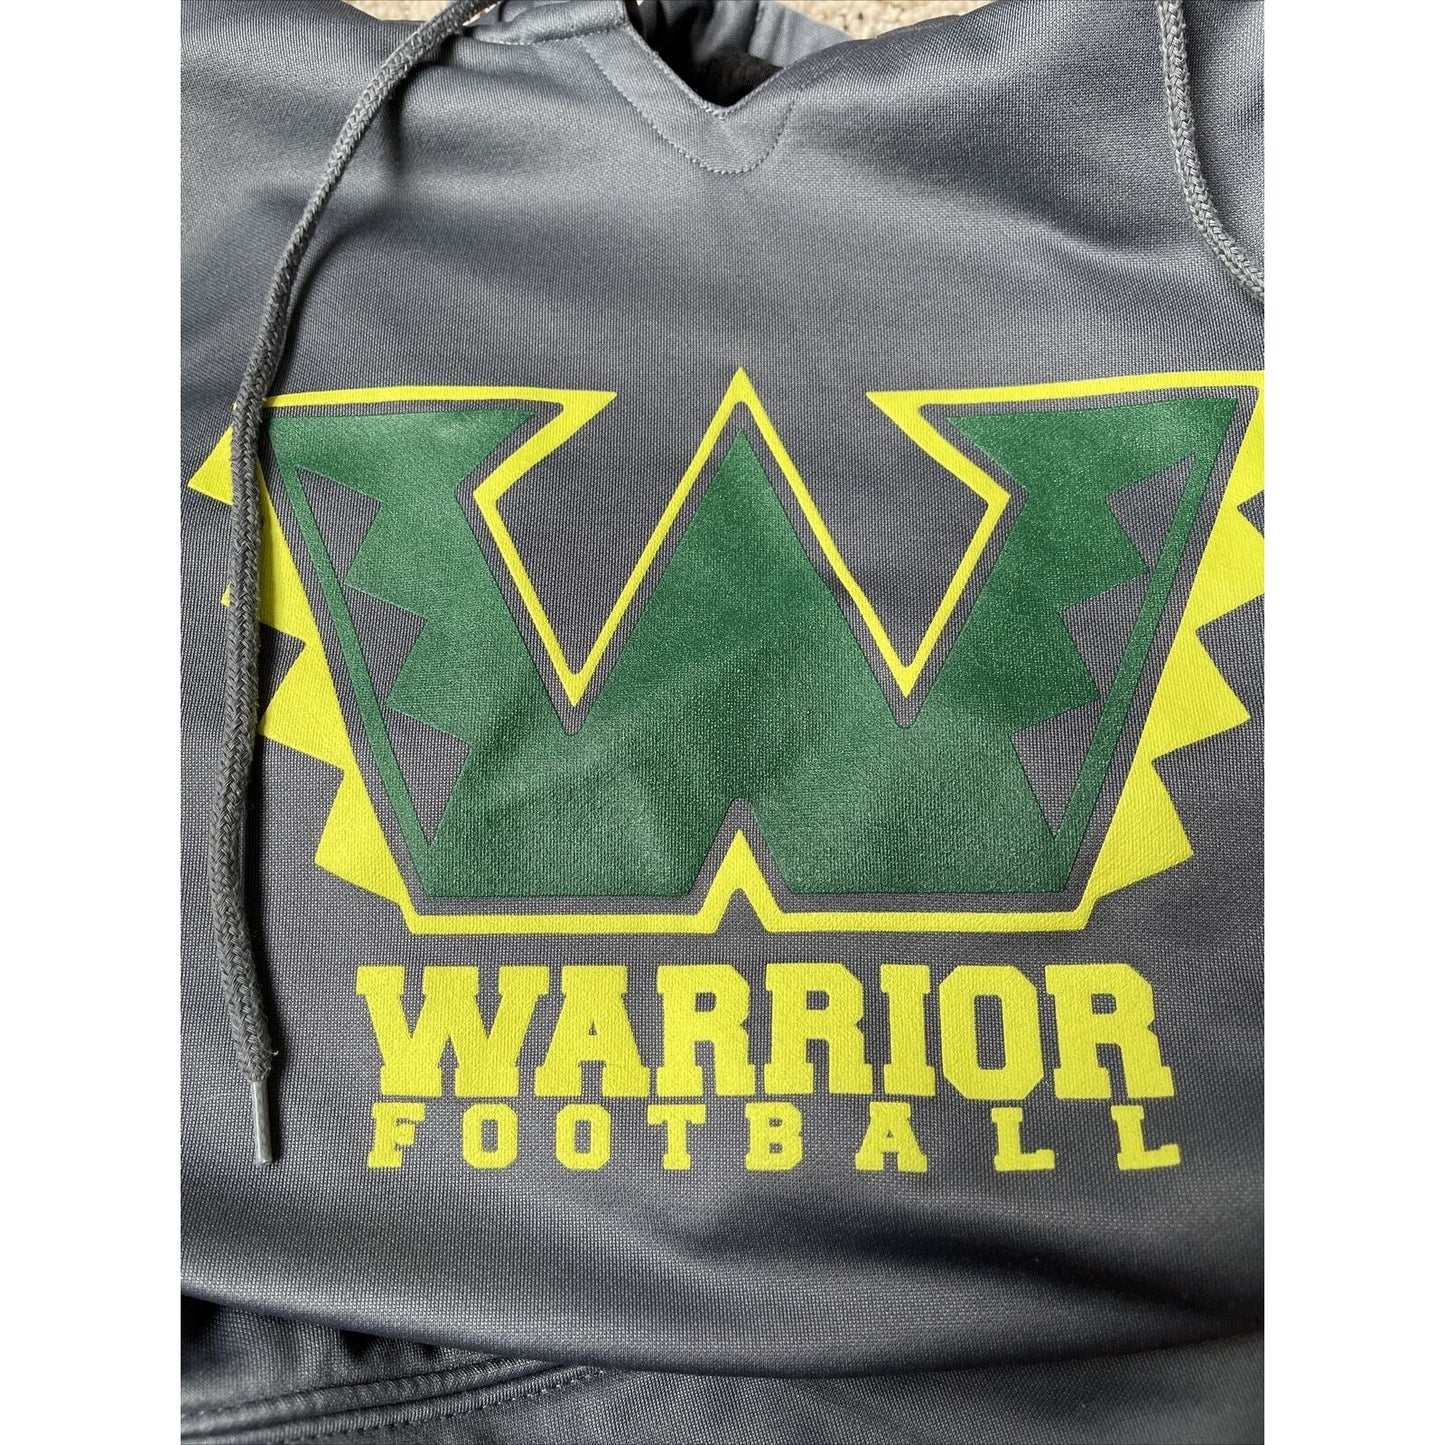 Men’s Colorado Springs Warrior Football hoodie gray Rawlings adult medium